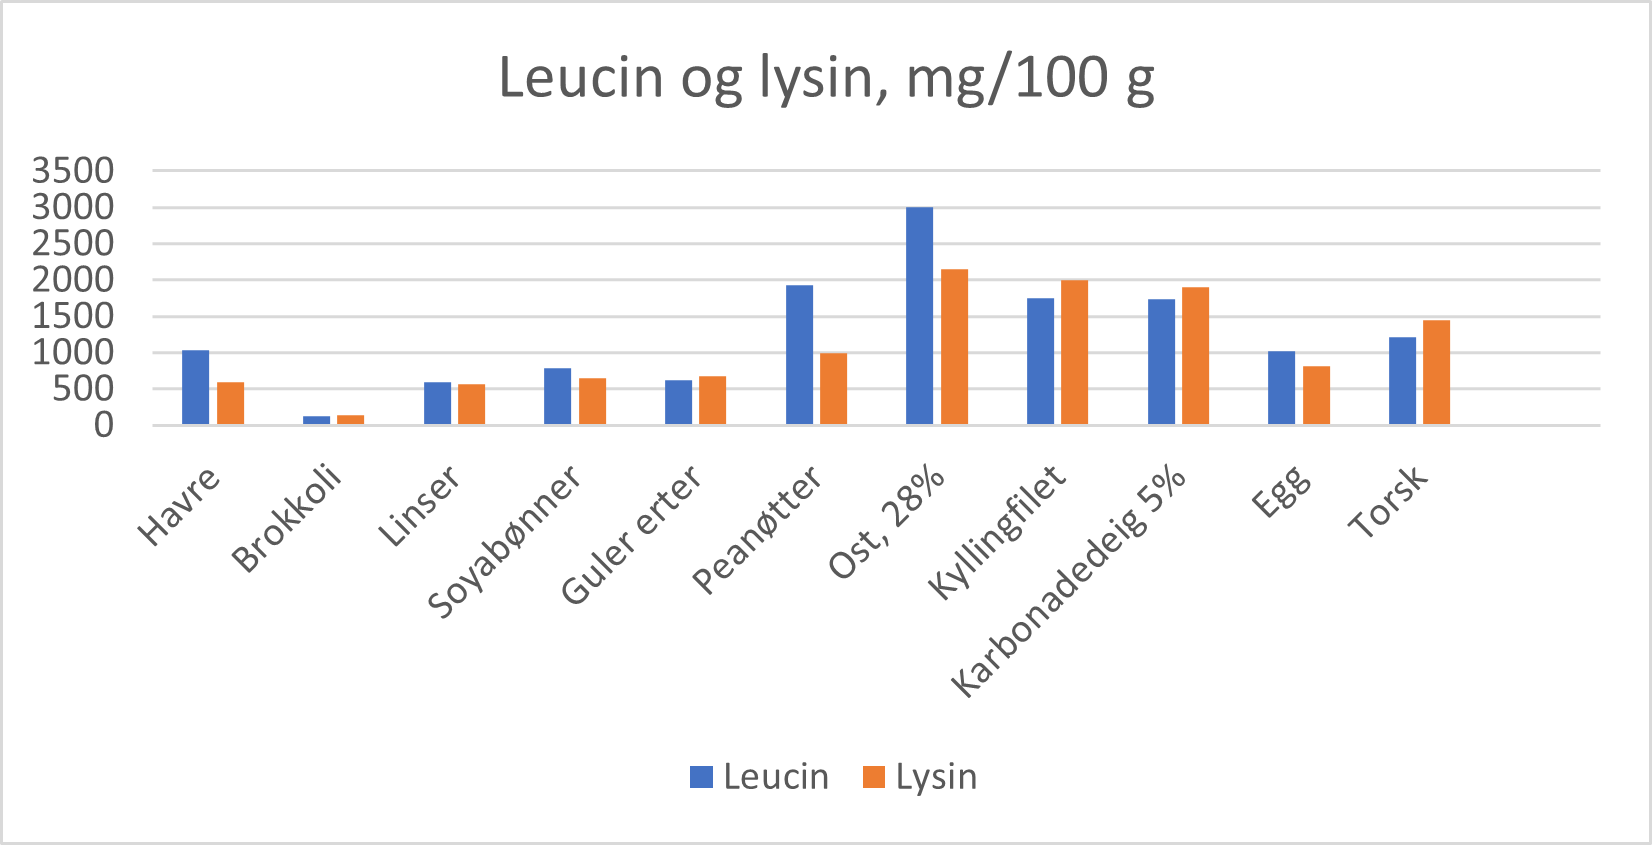 Innhold av leucin og lysin i utvalgte matvarer (mg per 100 g vare). Med unntak av verdiene for karbonadedeig, egg og kyllingfilet, er de øvrige hentet fra danske og svenske databaser.  